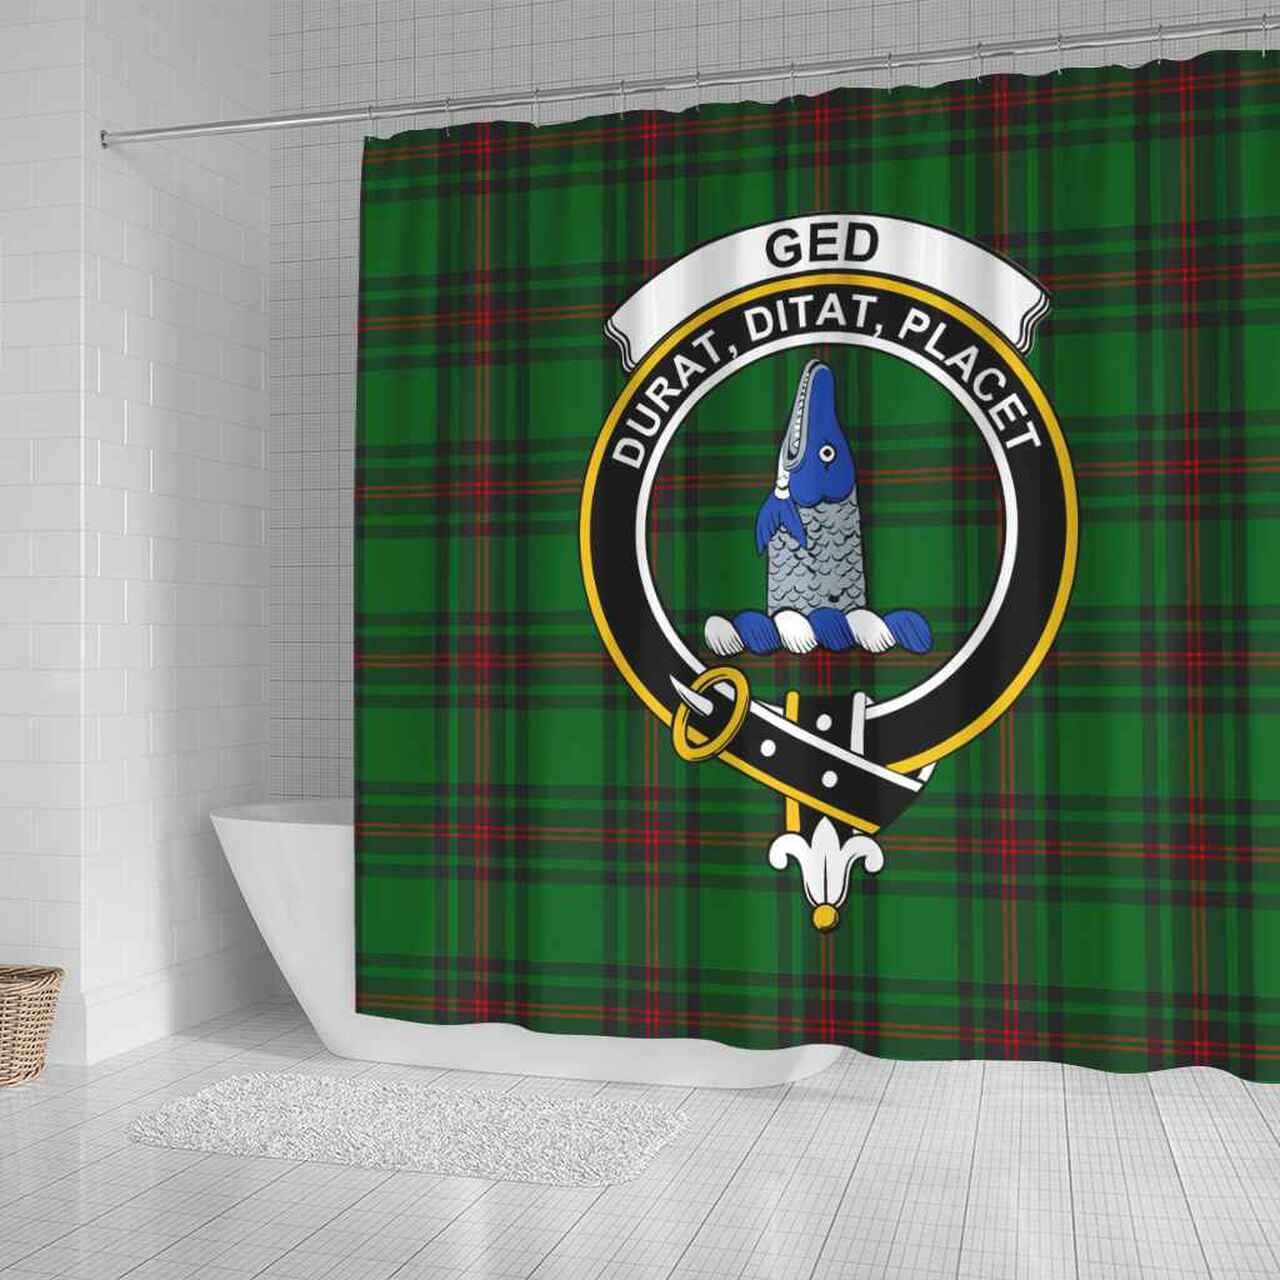 Ged Tartan Crest Shower Curtain